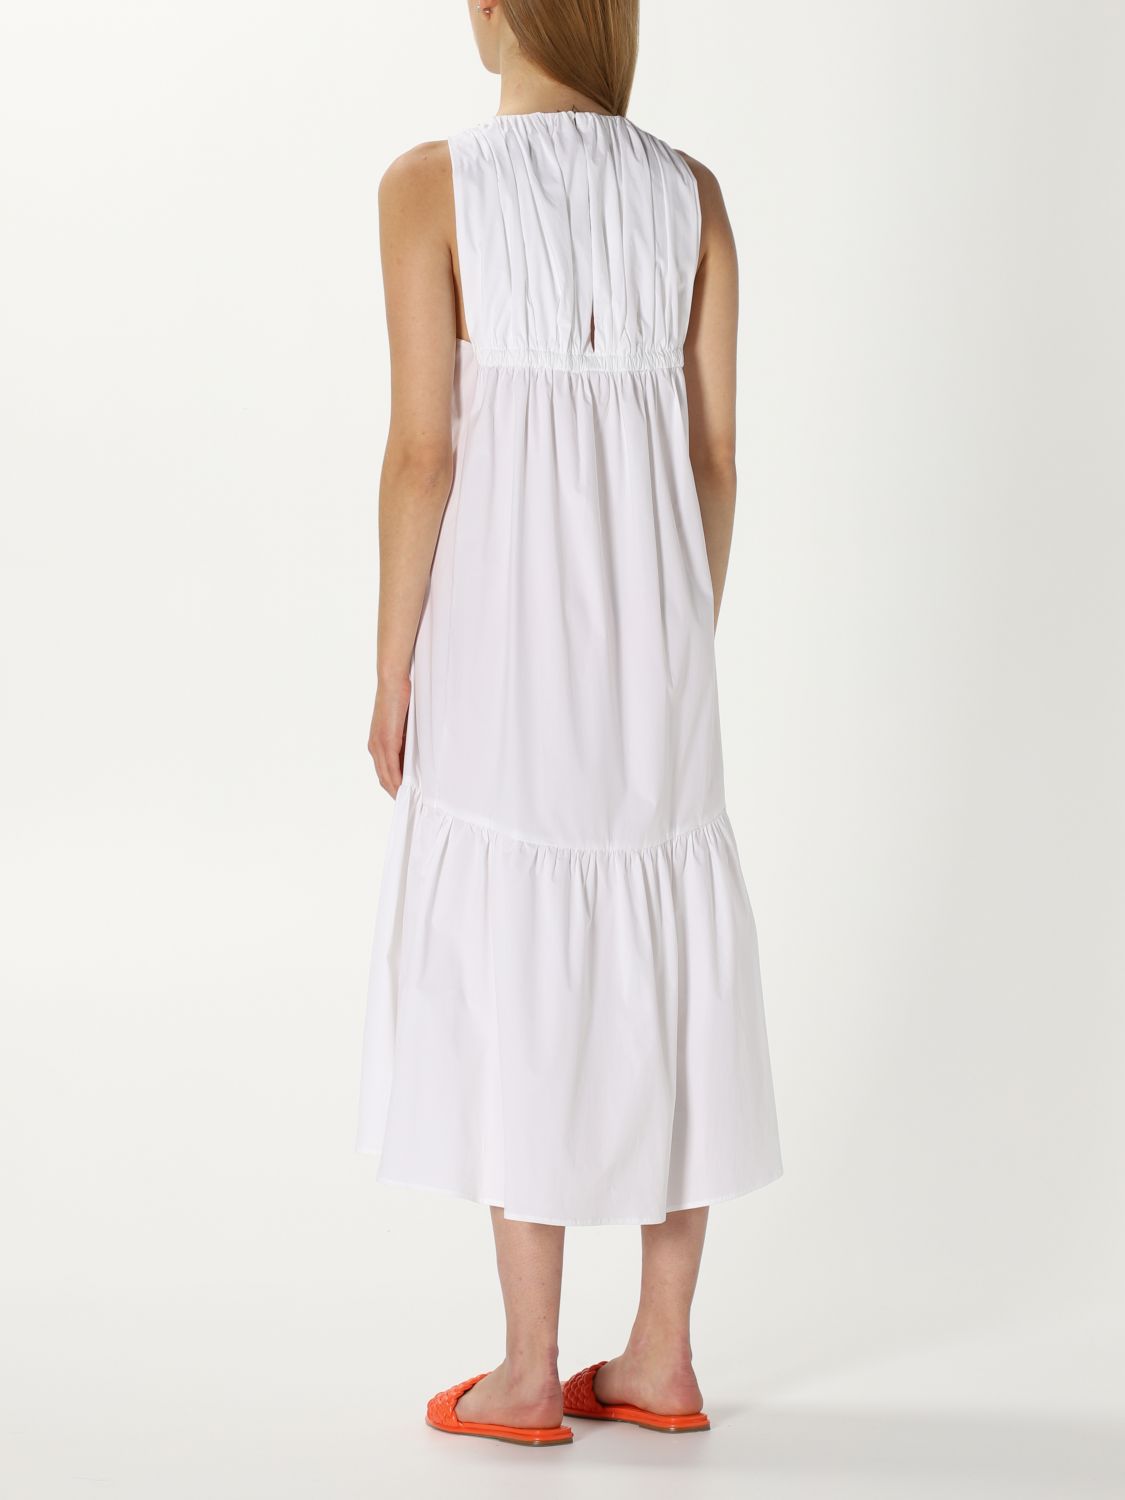 PESERICO: dress for woman - White | Peserico dress S02810 06775 online ...